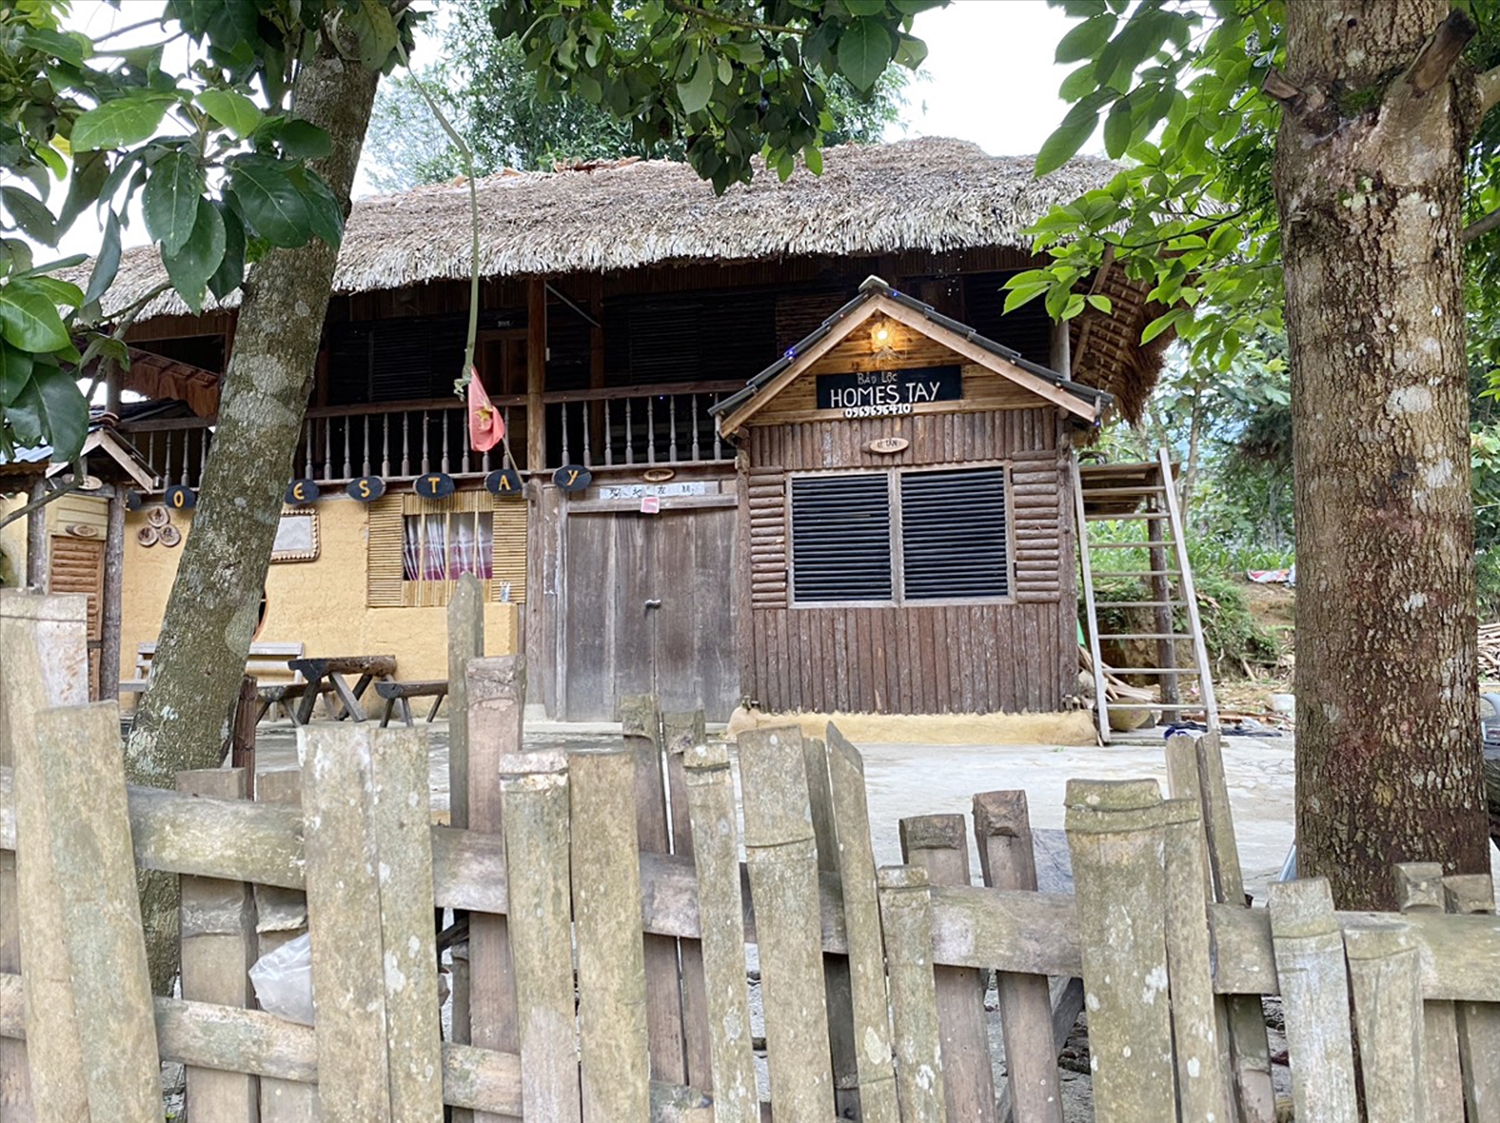  Homestay là ngôi nhà sàn trình tường truyền thống của người Dao